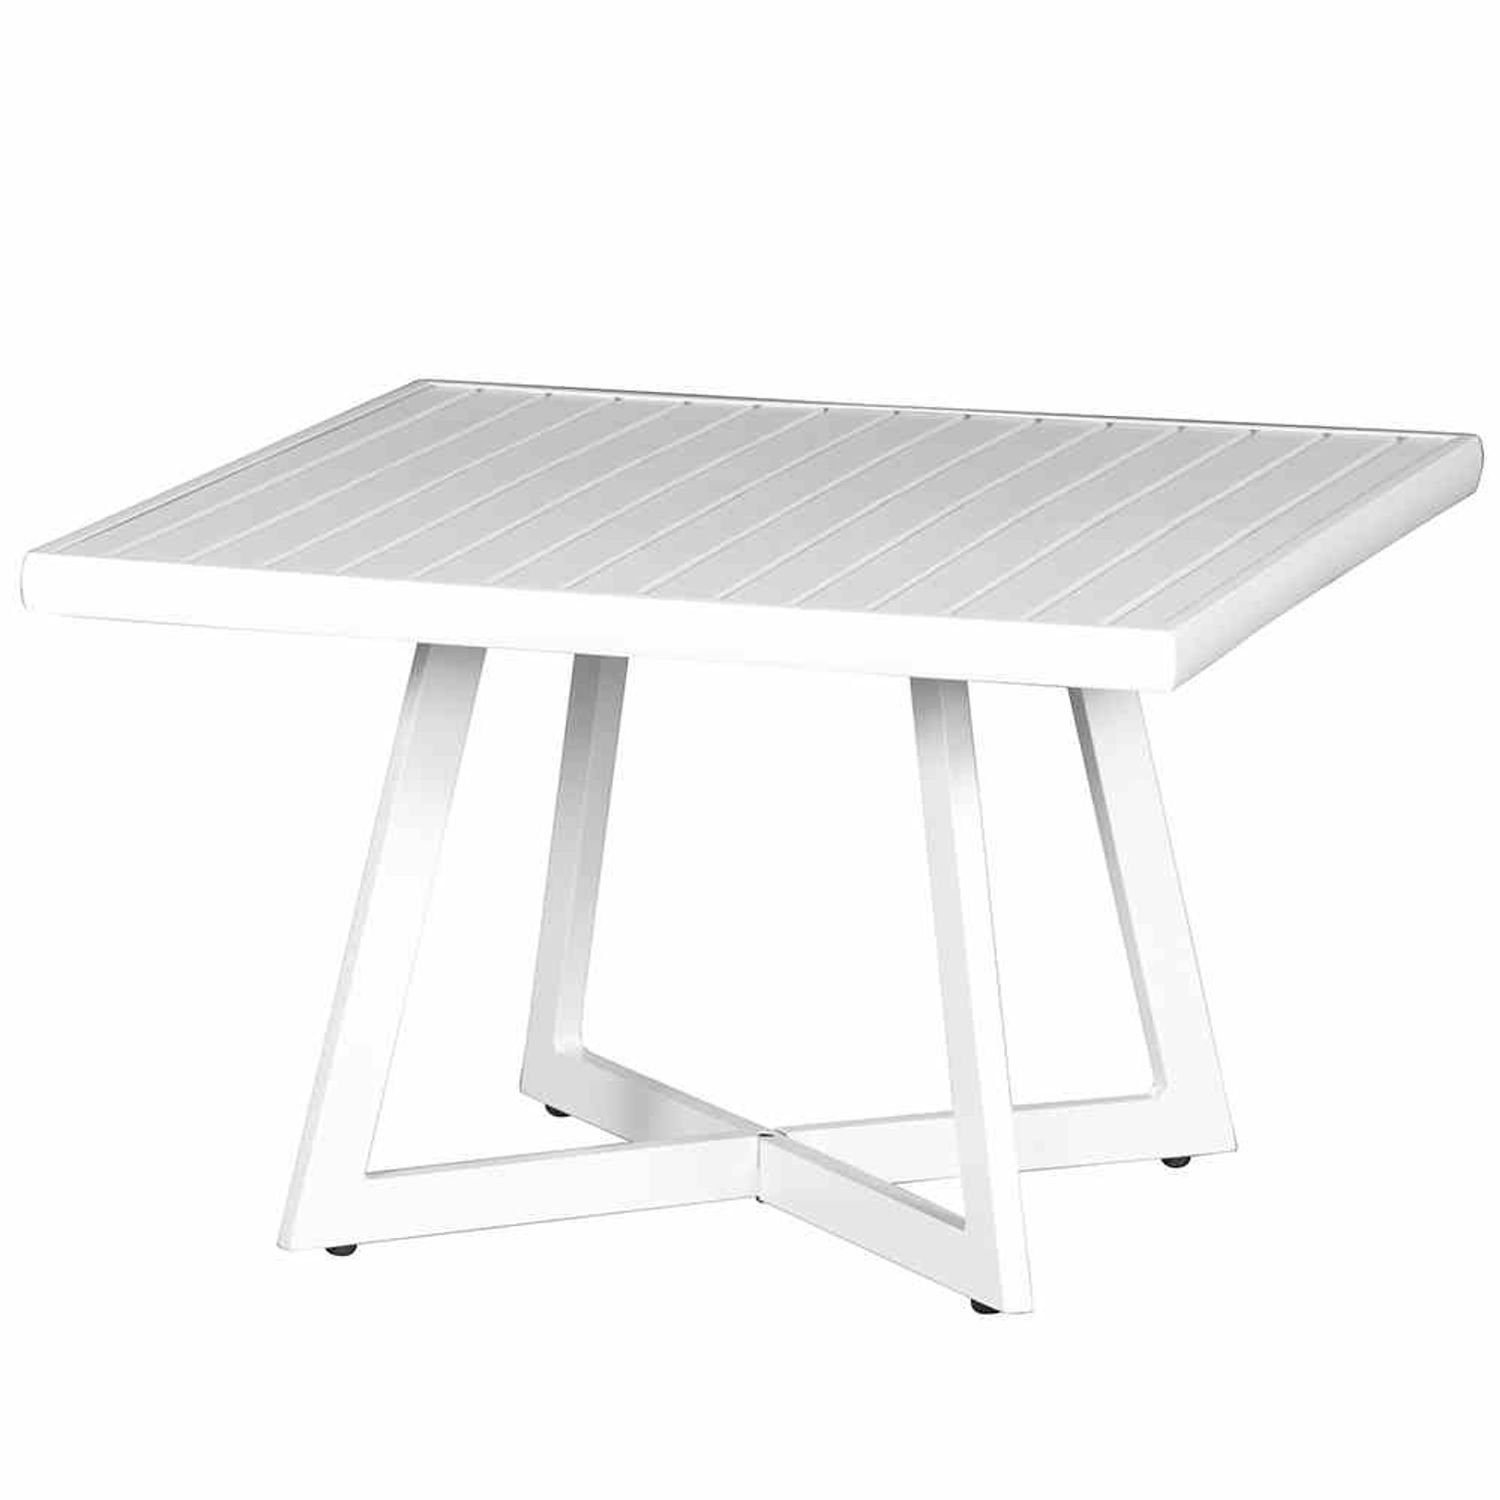 Siena Garden Gartentisch Alexis Lounge Tisch 70x70cm Aluminium matt-weiß Gartentisch Tresentisc